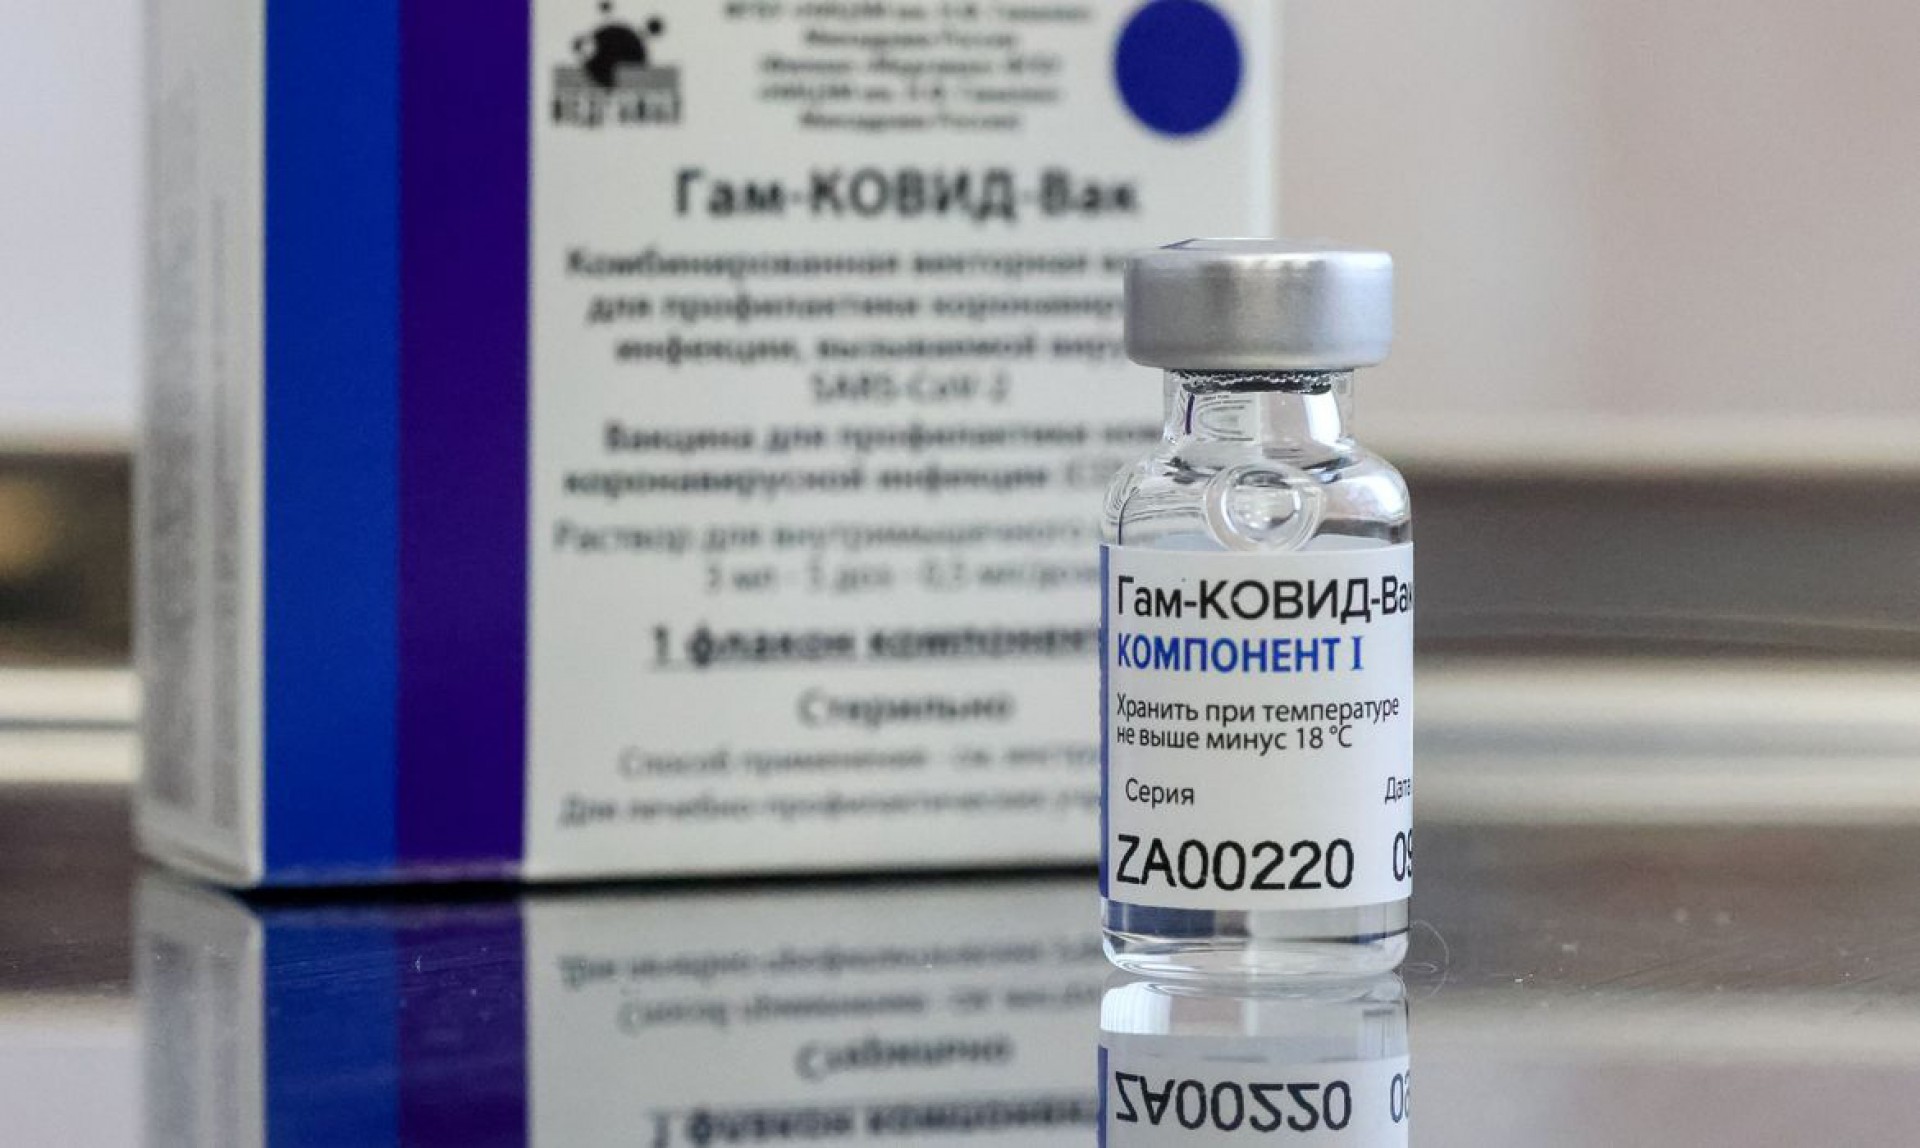 ￼Importação e uso emergencial da vacina russa foi objeto de reunião da Anvisa (Foto: Vladimir Gerdo/TASS/ Reuters/Direitos reservados)